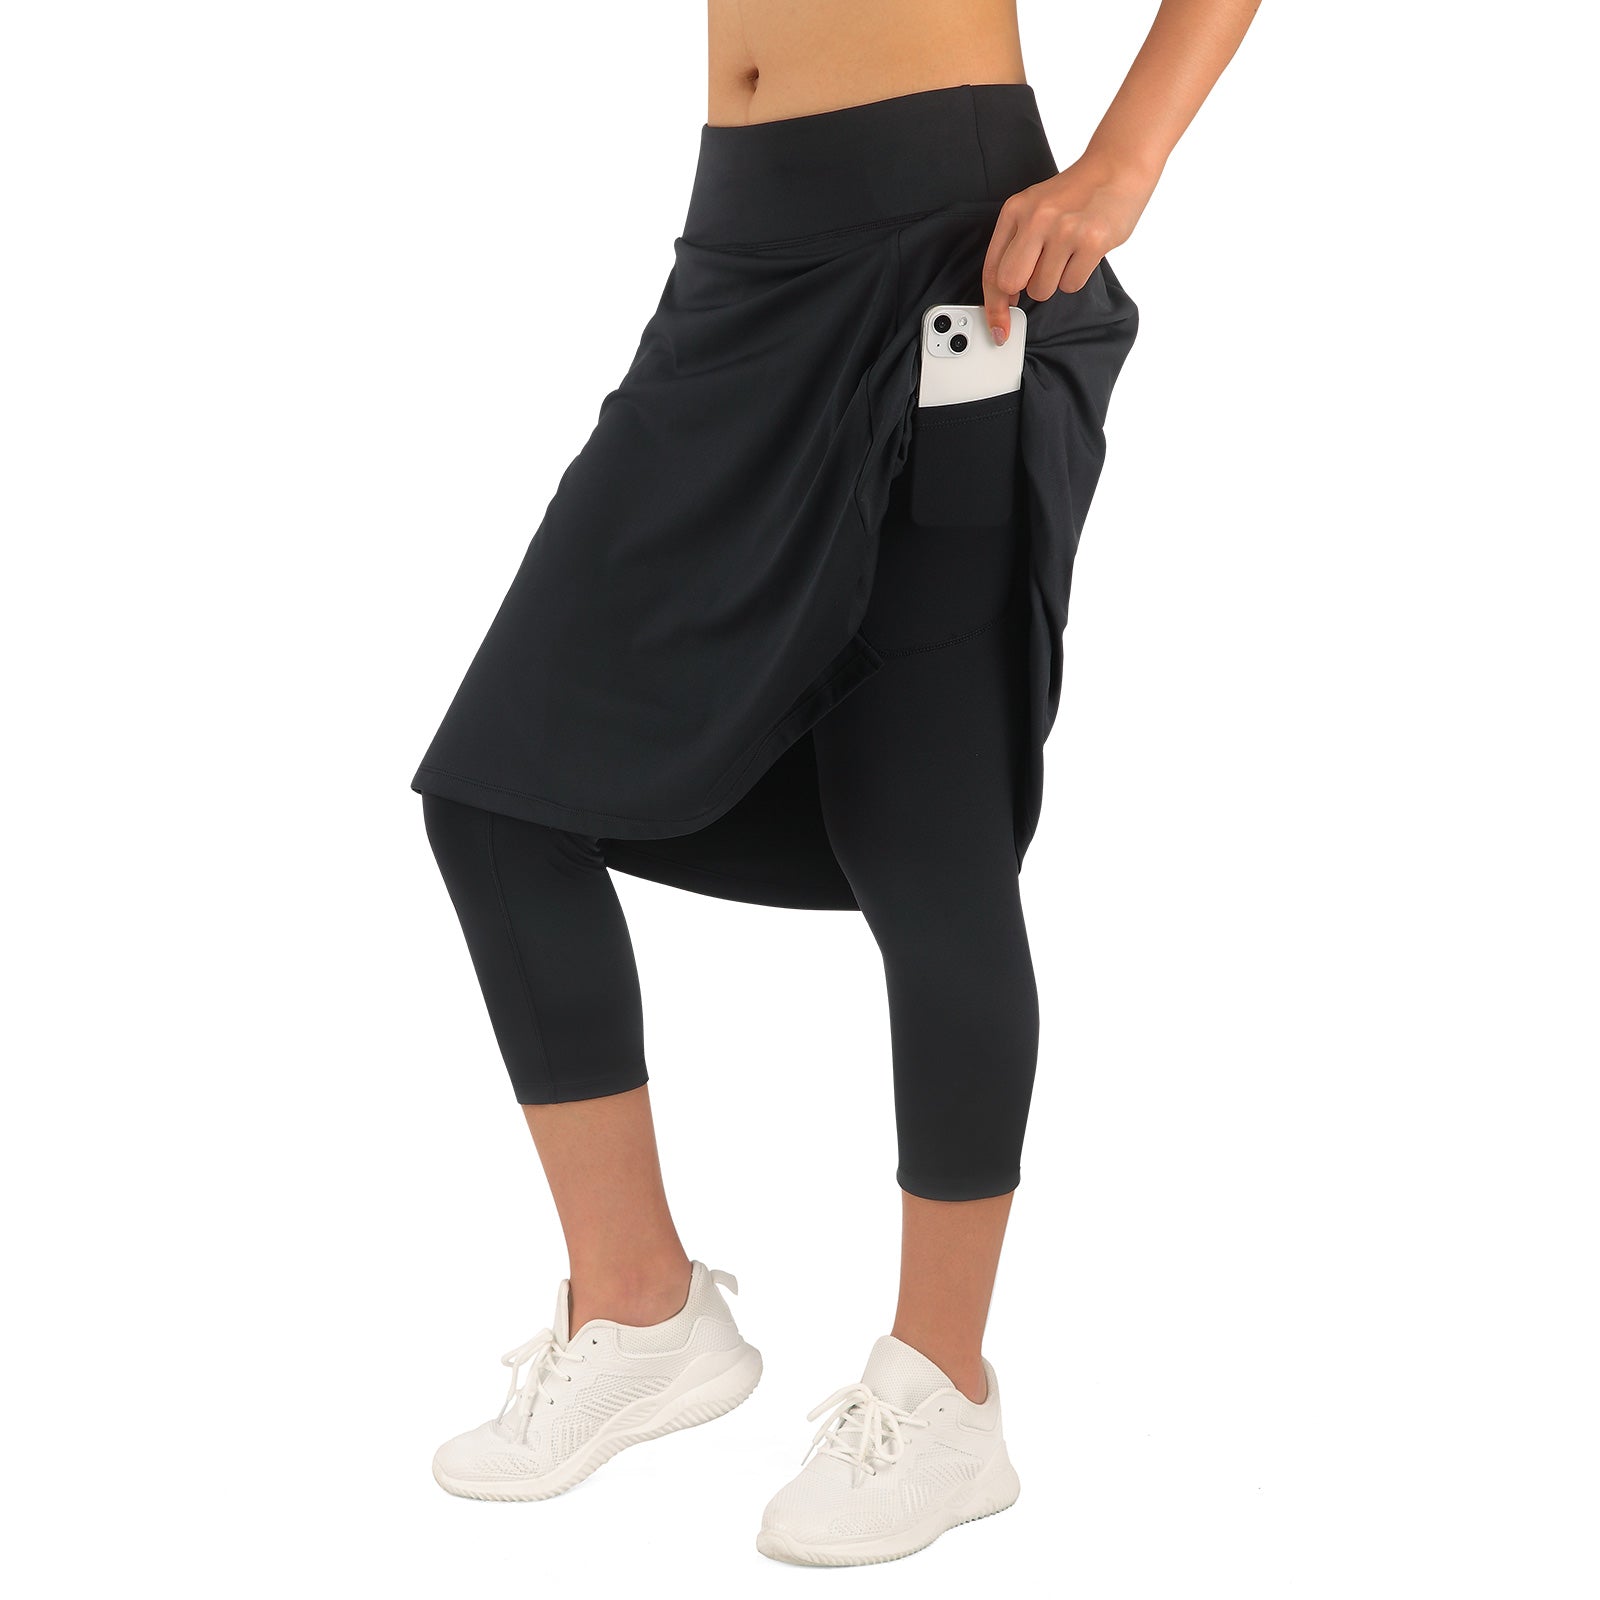 Athletic Skirt with full length Leggings Tennis Skirted Legging for Wo –  Anivivo